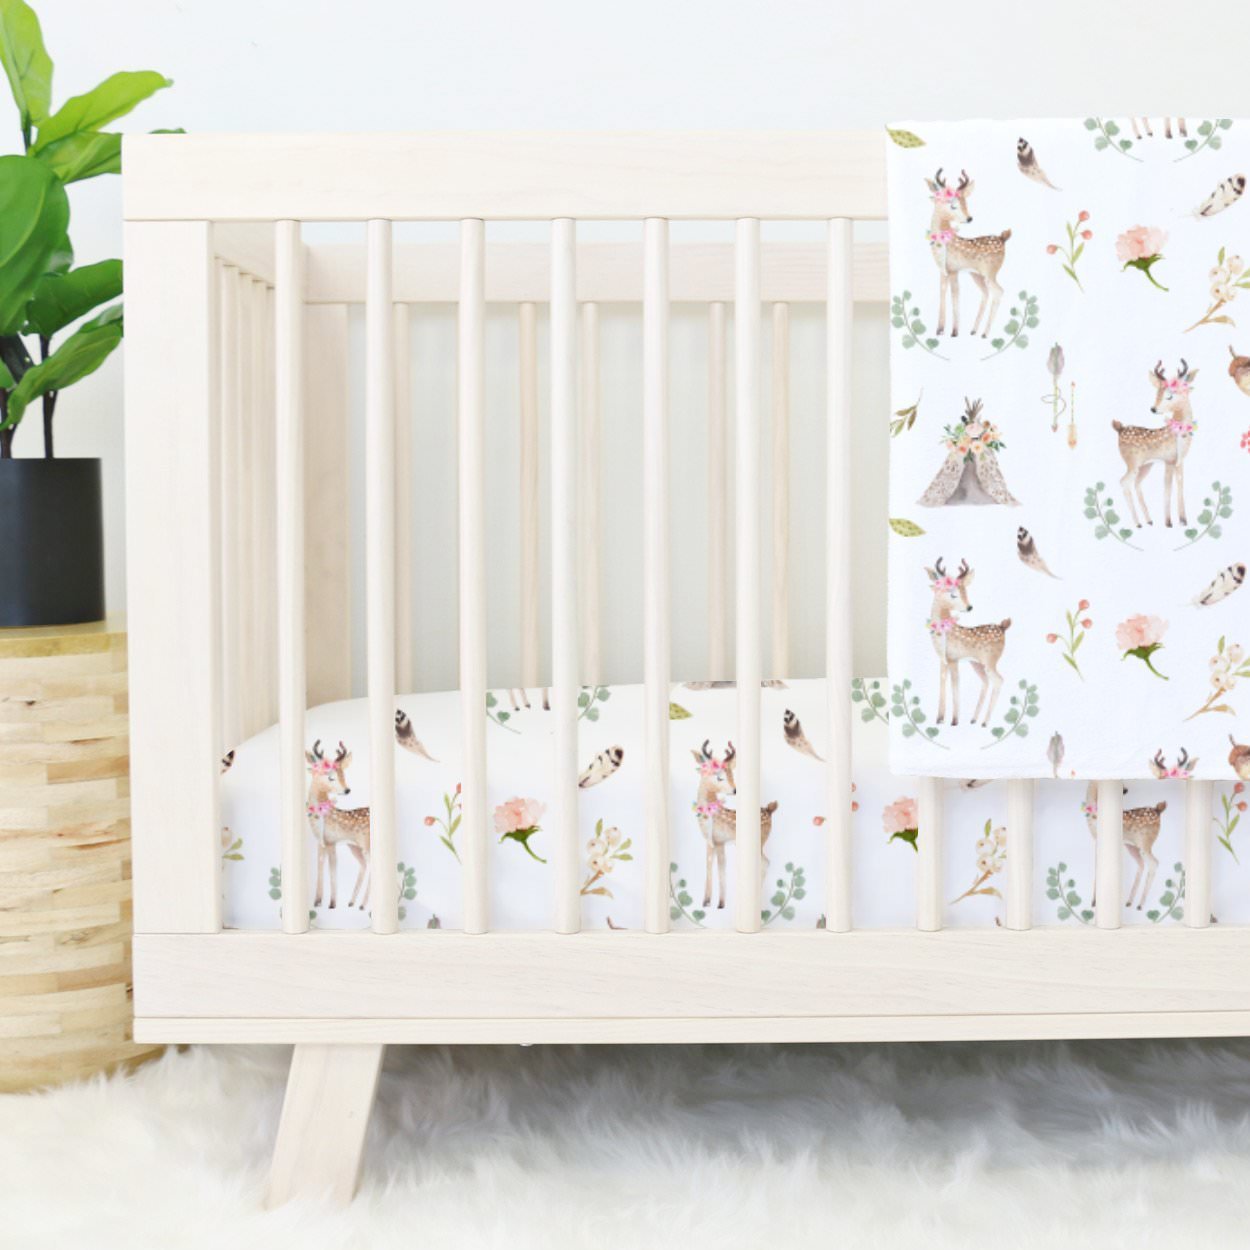 تخت خواب نوزاد چوبی که دارای روتختی با طرح زیبا و آهو می باشد